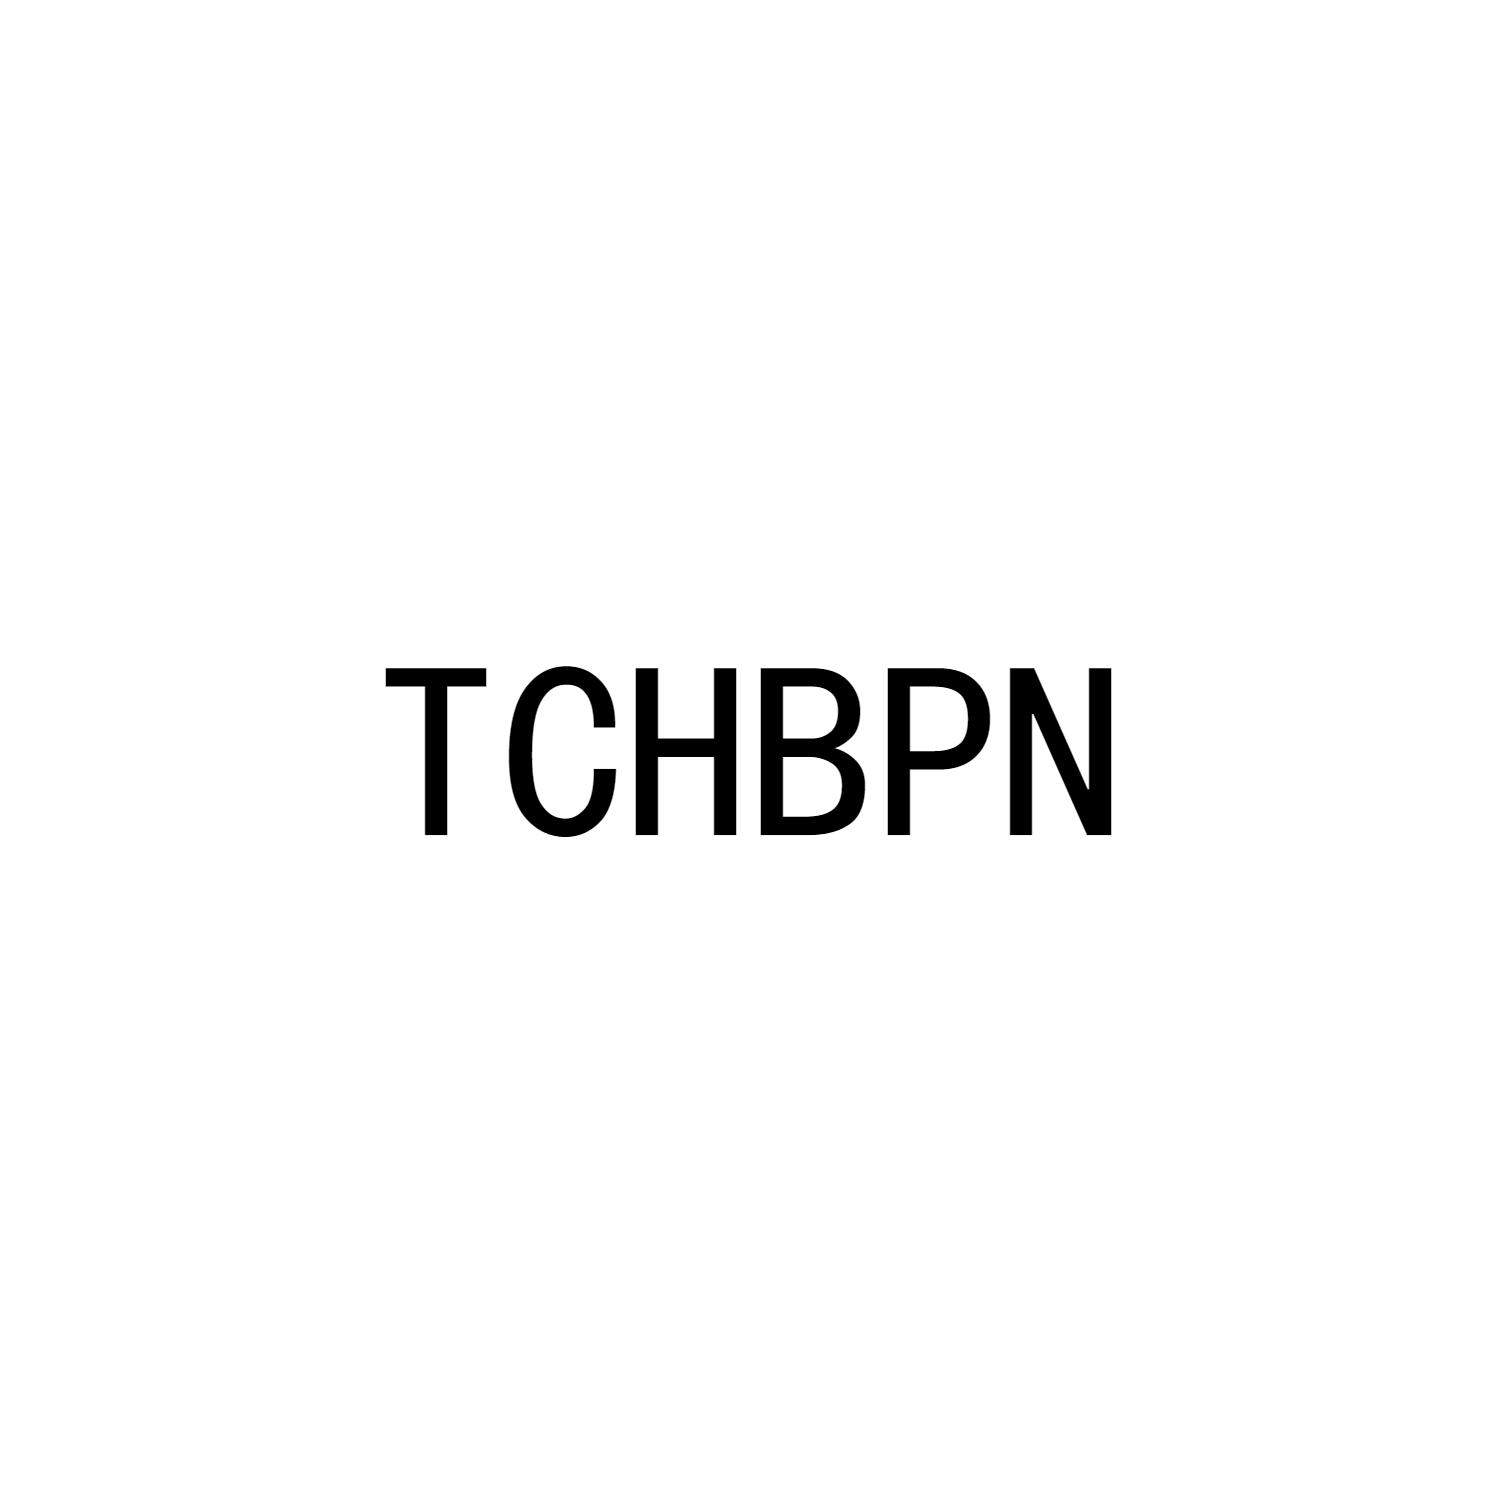 TCHBPN